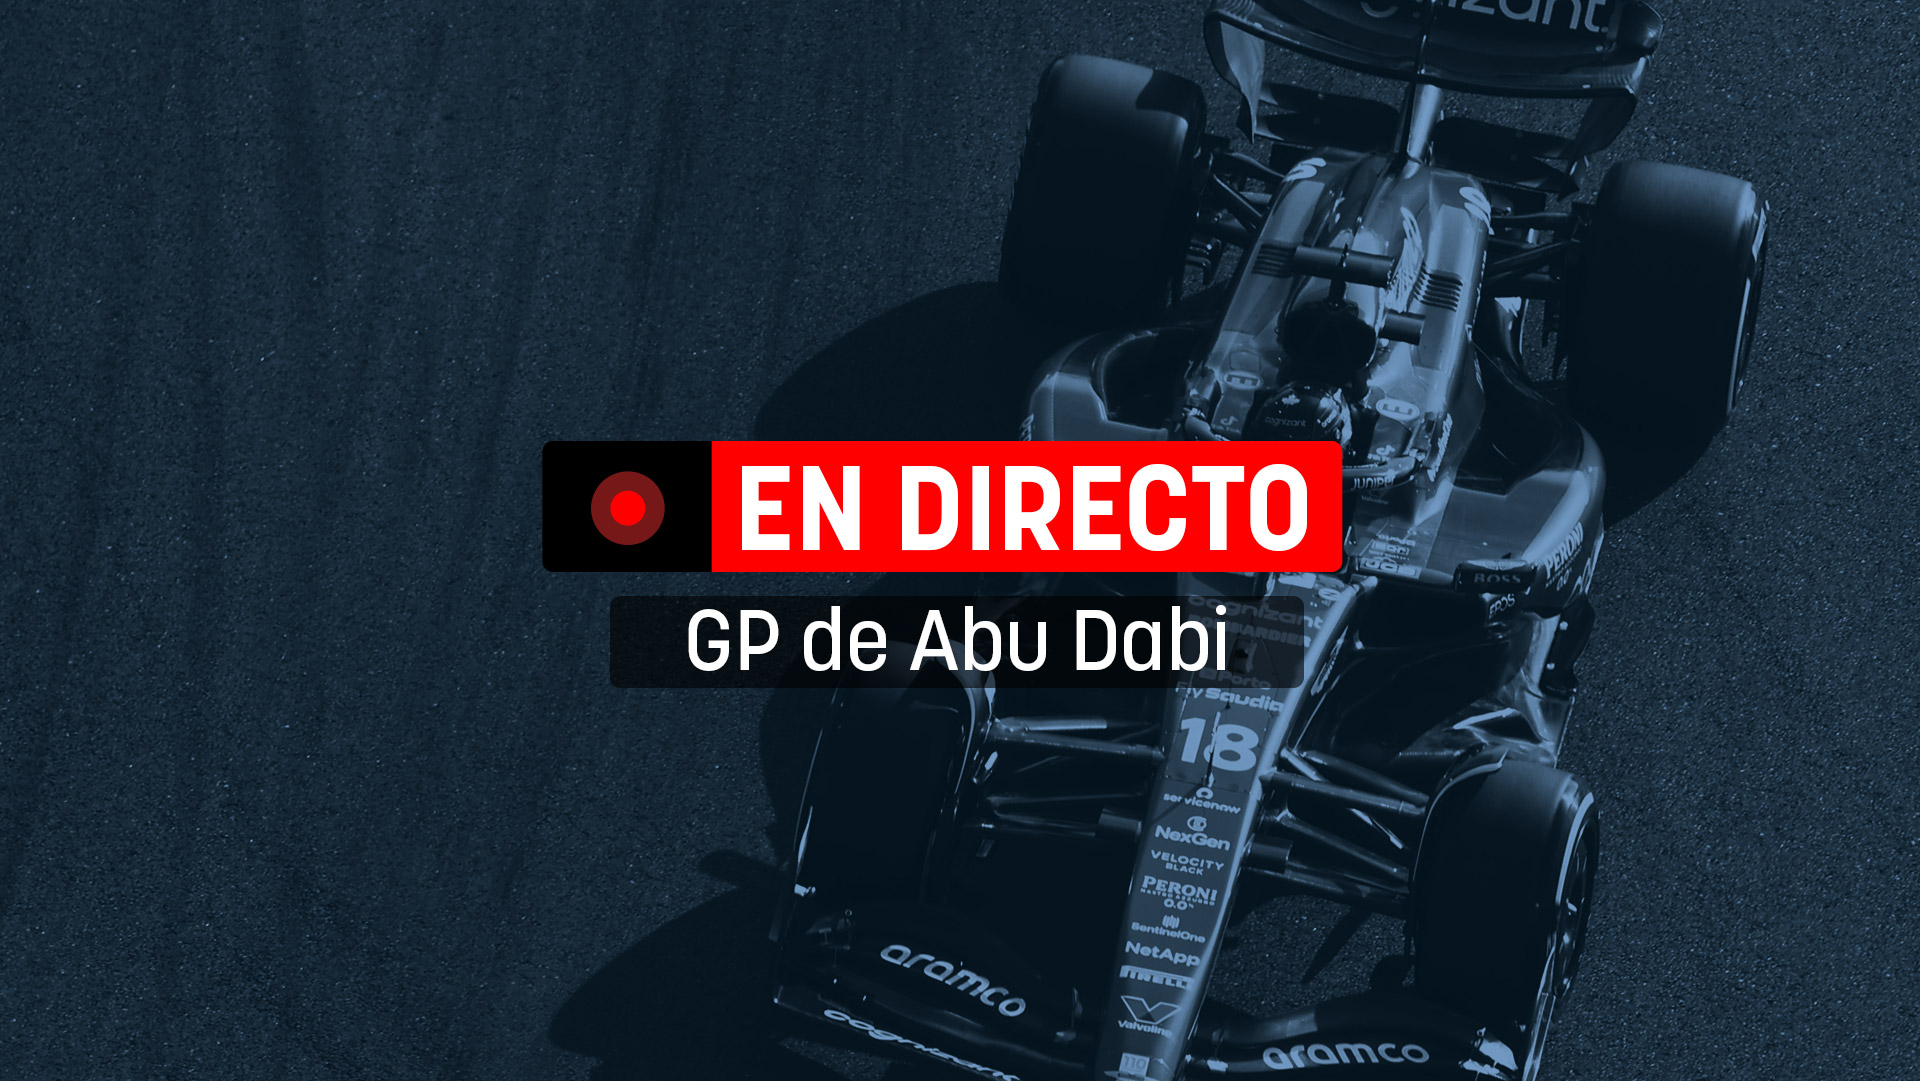 GP de Abu Dabi de Fórmula 1, en directo.